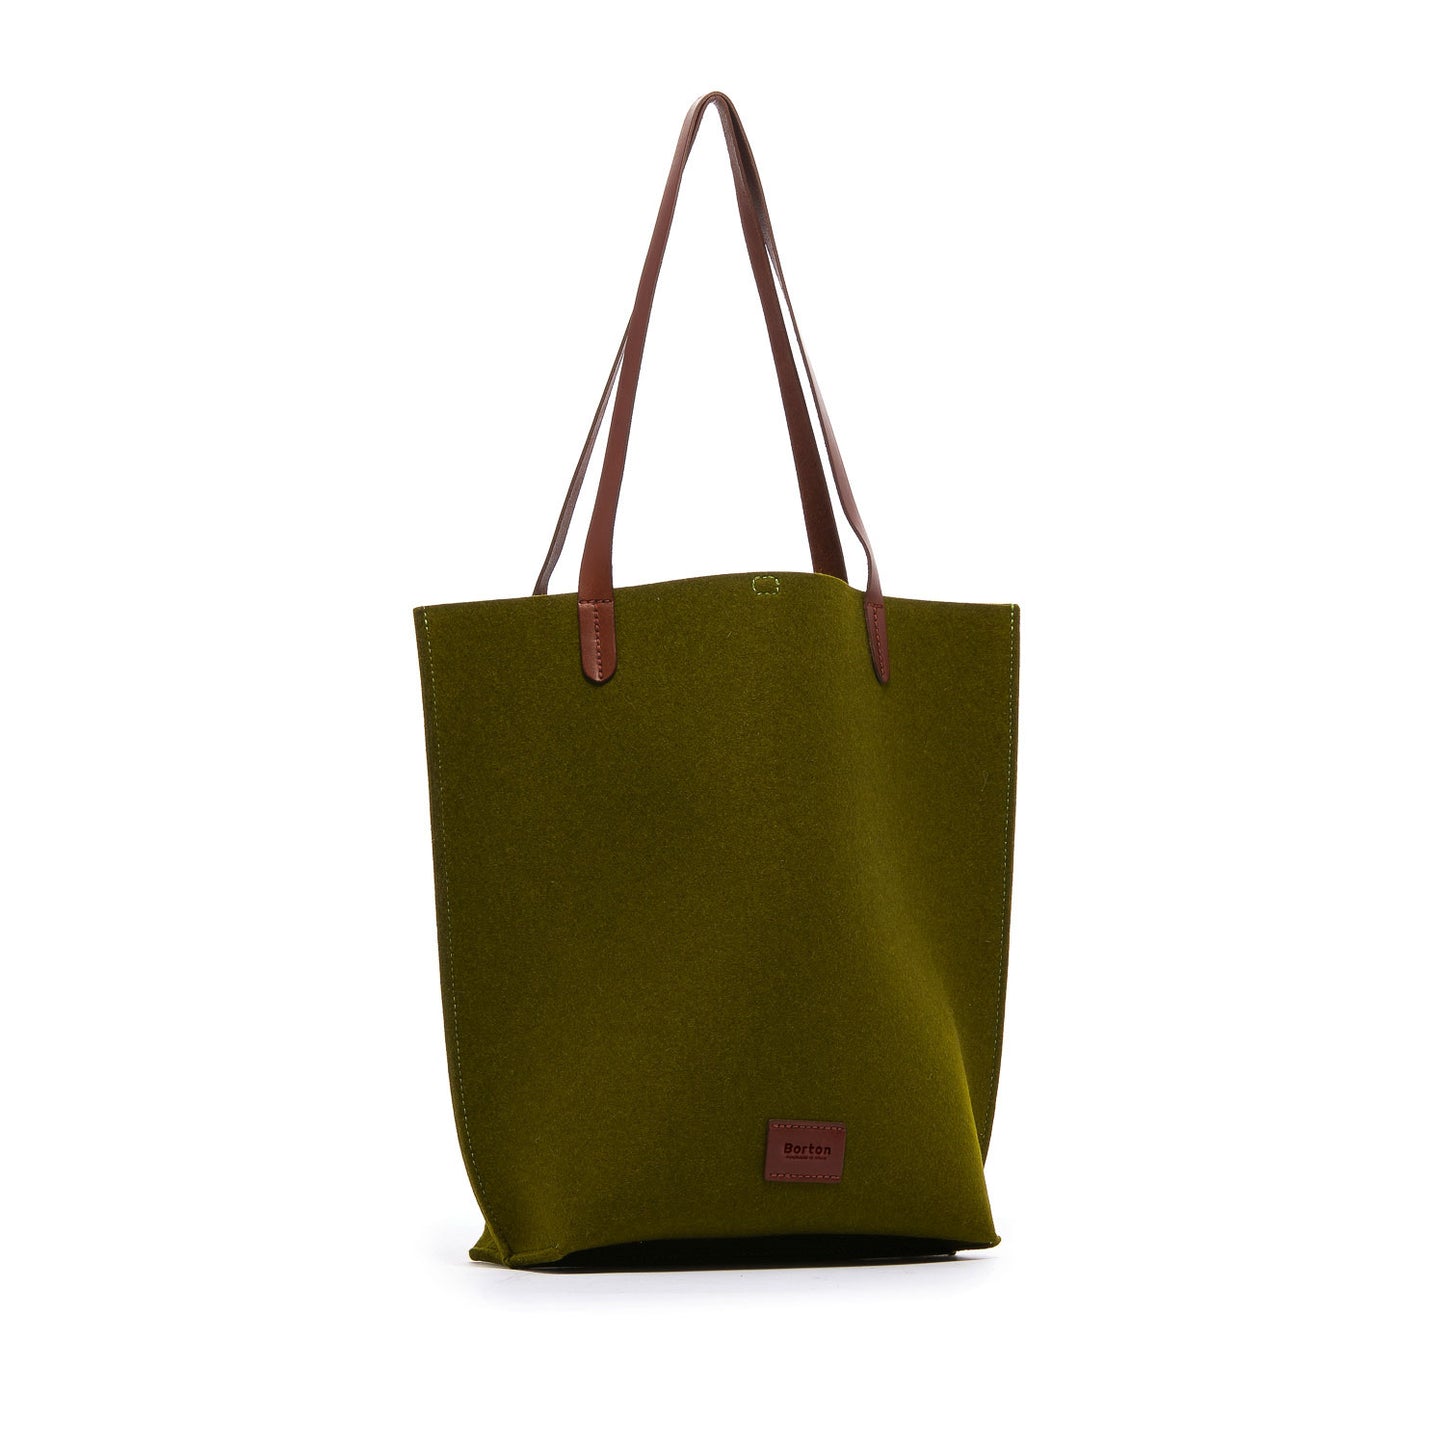 Mery Tote Bag Green Felt & Tan Leather